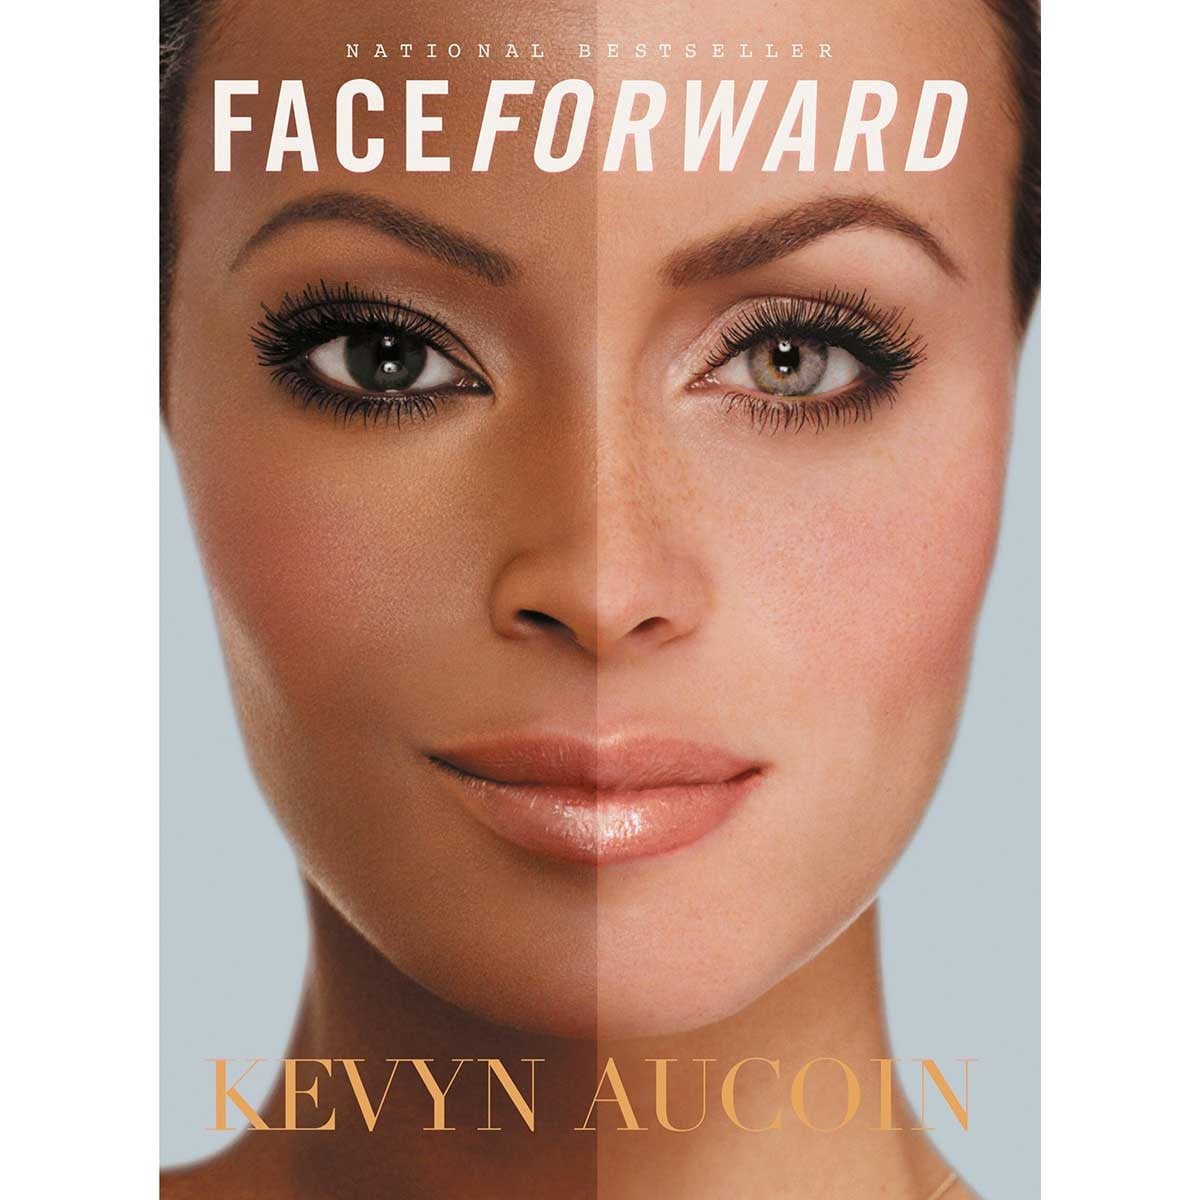 Face Forward by Kevyn Aucoin